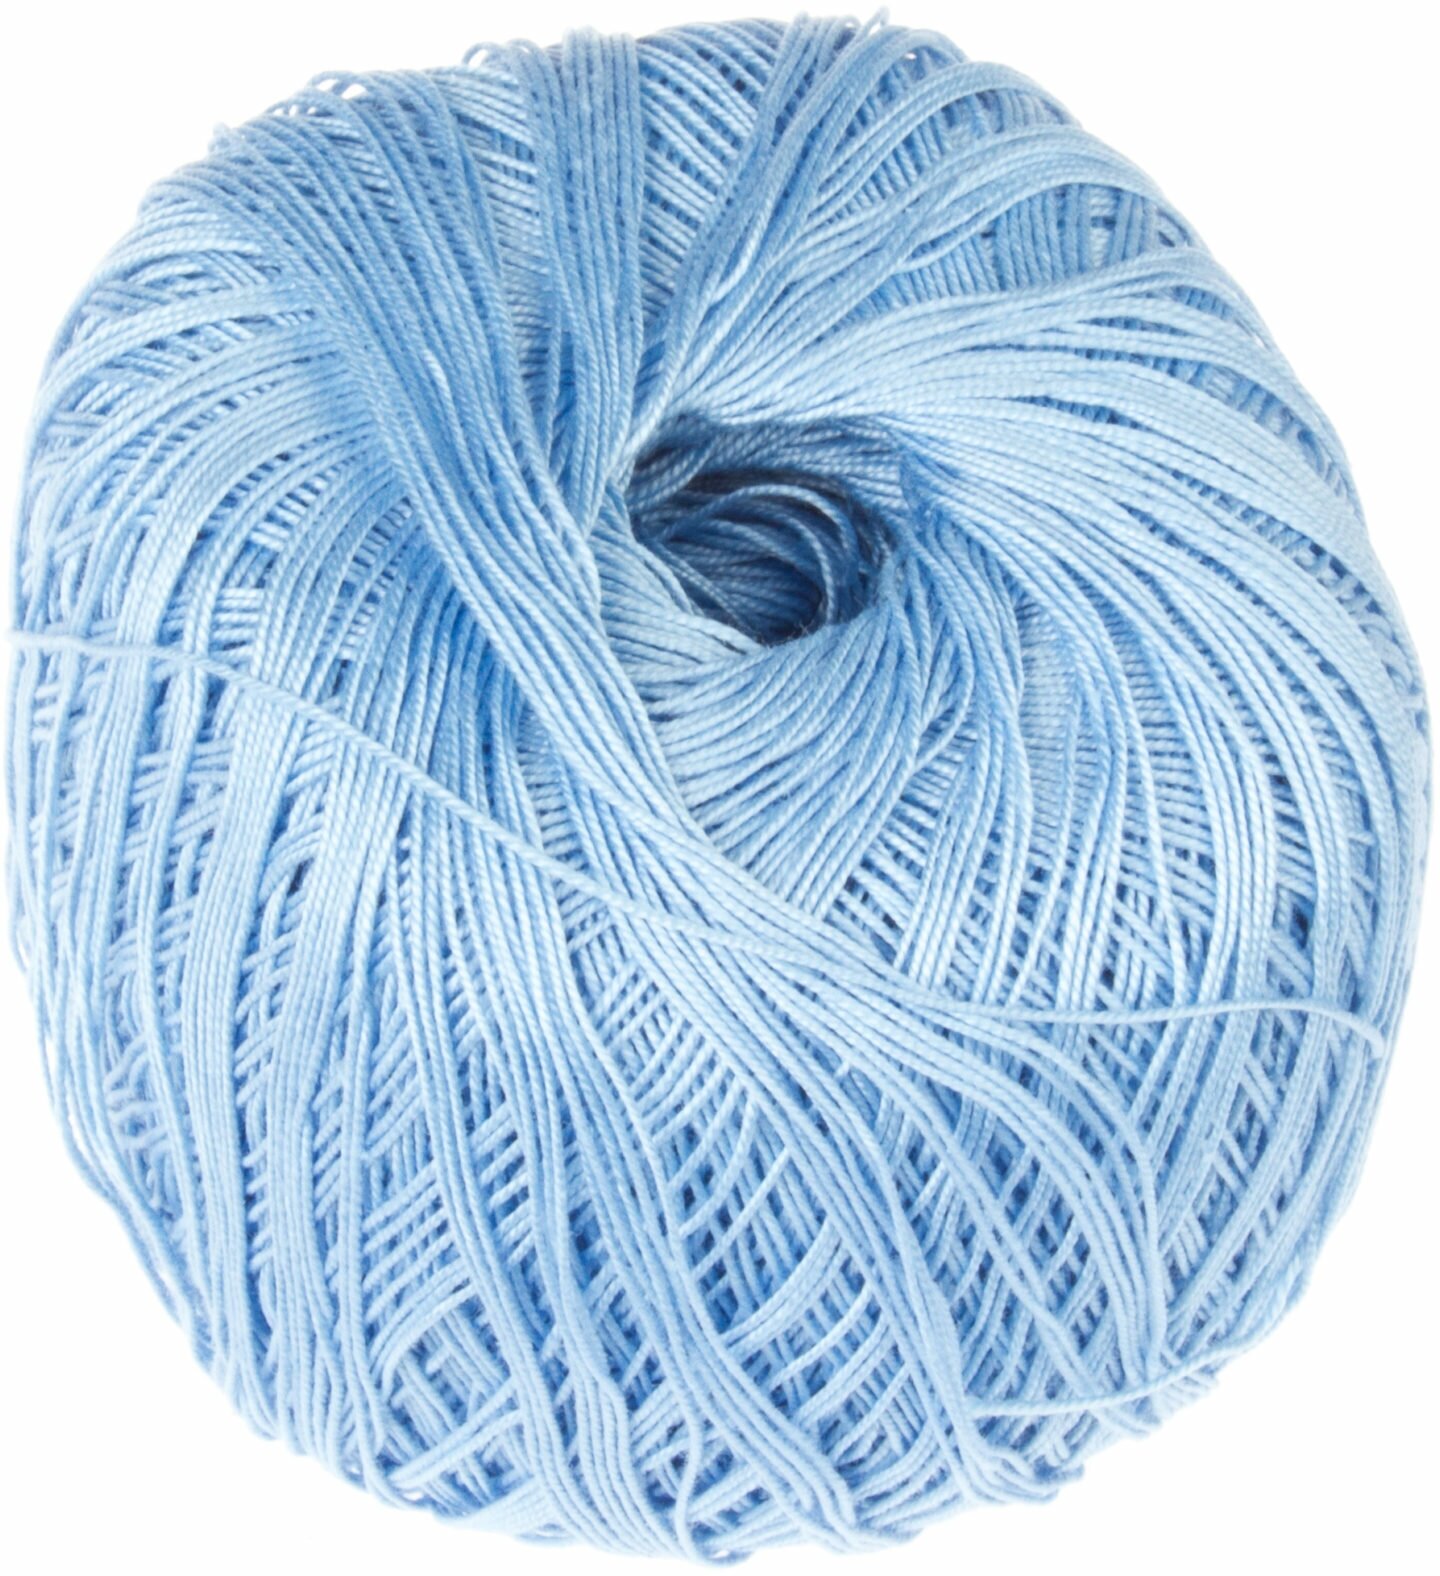 Пряжа Пехорка Цветное кружево голубой (5), 100%мерсеризованный хлопок, 475м, 50г, 1шт